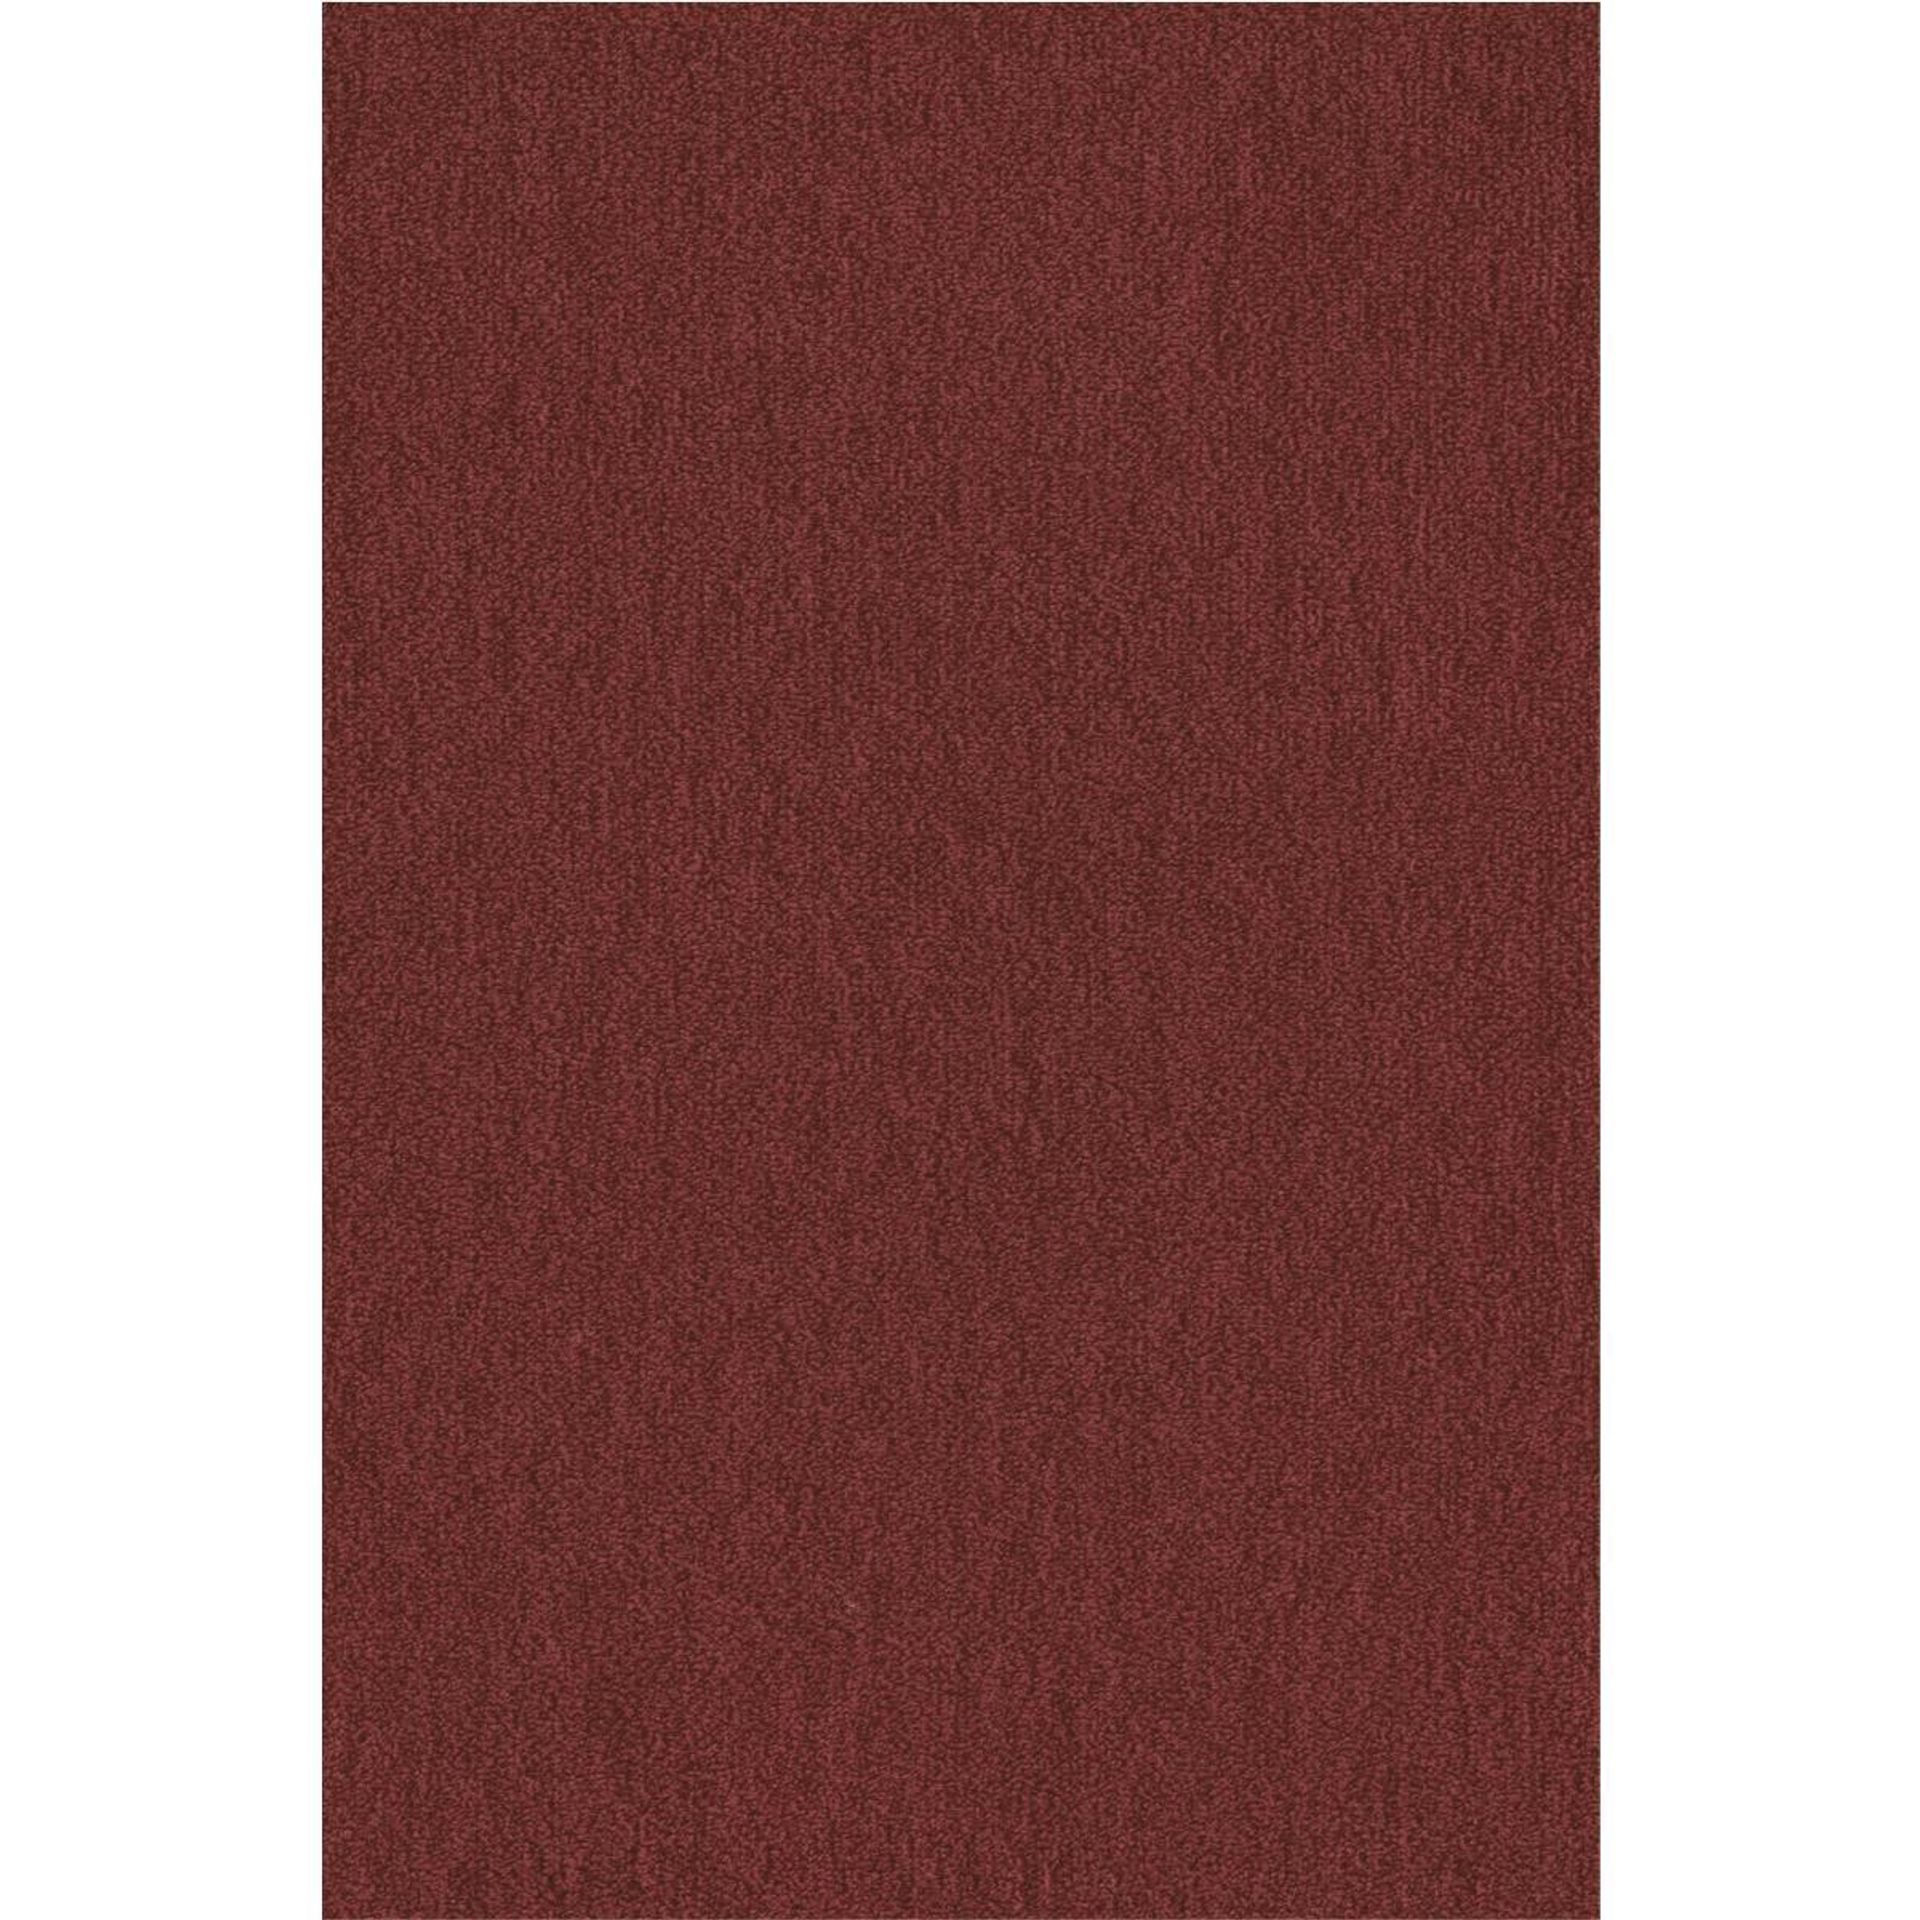 Teppichboden Vorwerk Passion 1002 NUTRIA MELANGE Velours Rot 1P45 - Rollenbreite 500 cm